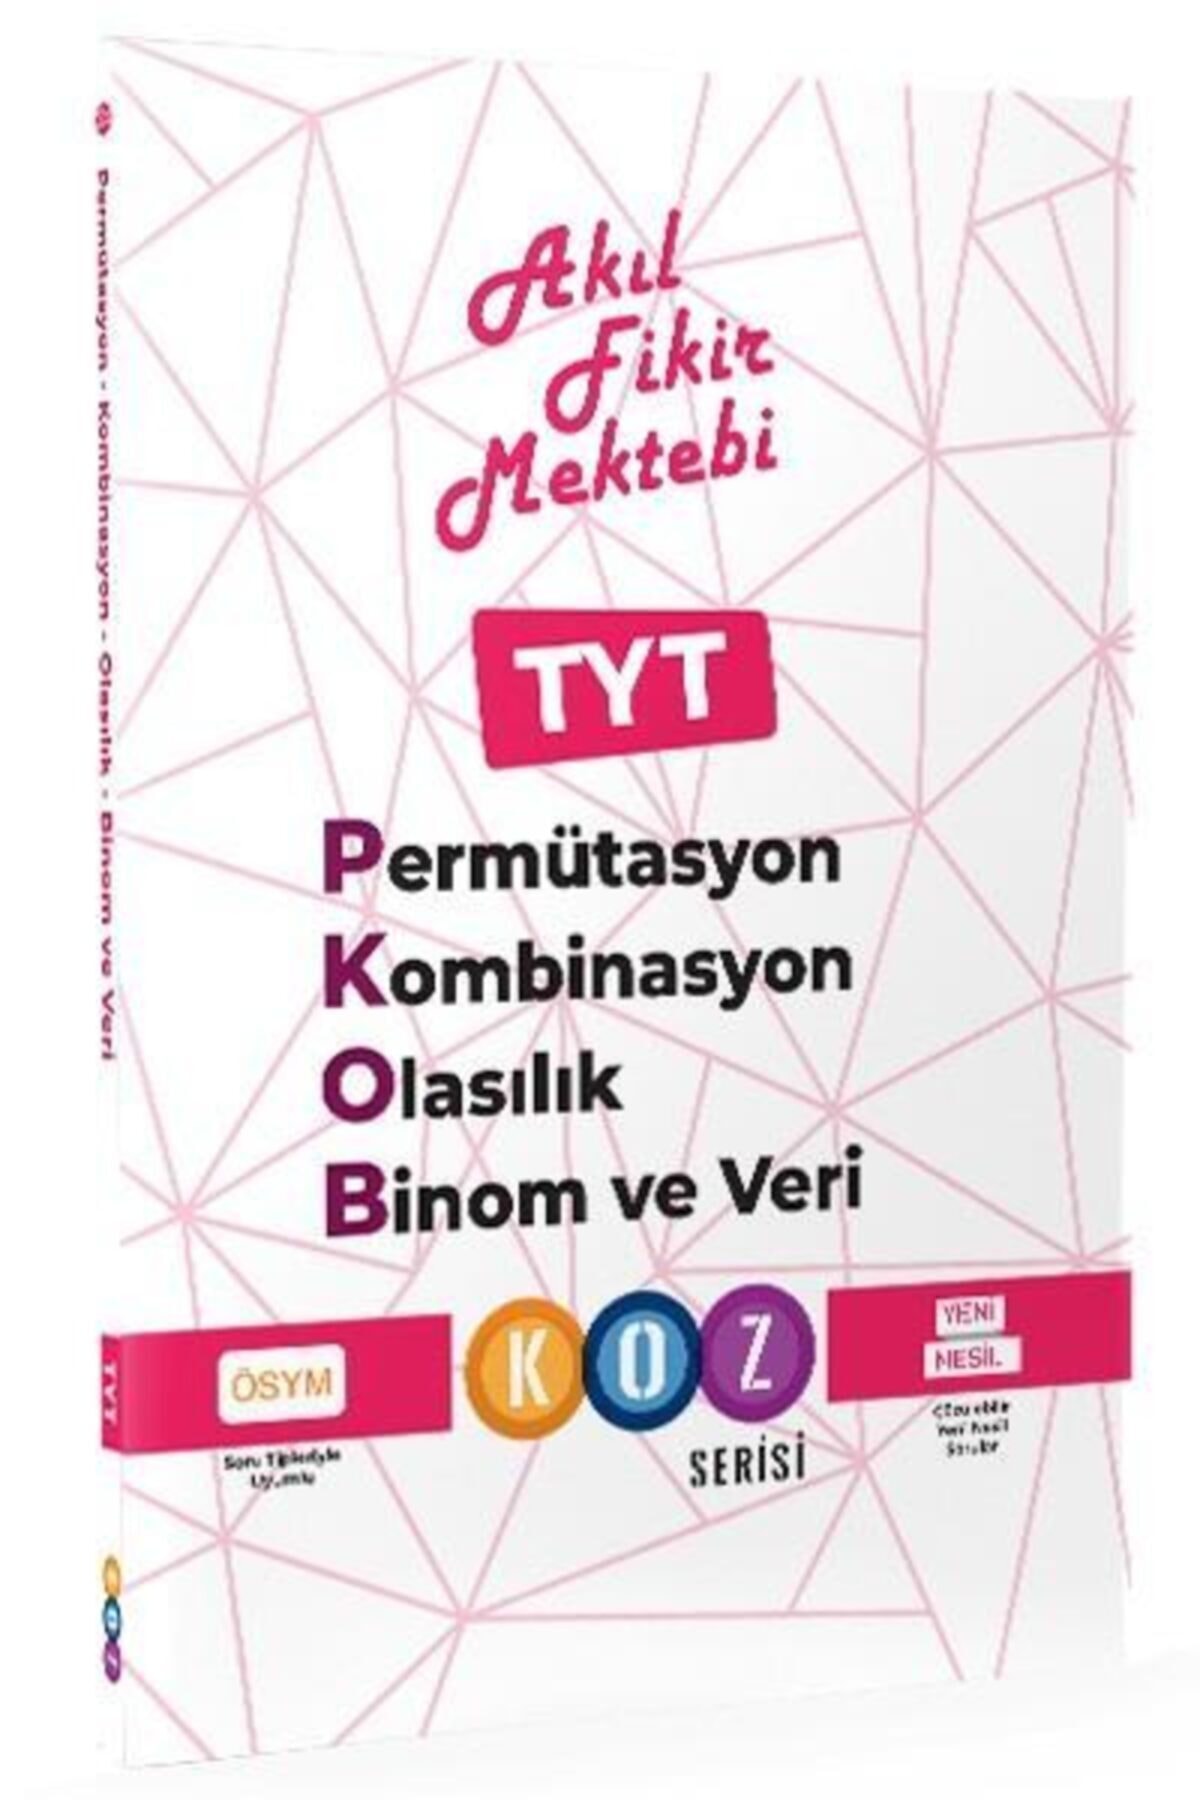 Akıl Fikir Mektebi Yayınları Tyt Permütasyon-Kombinasyon-Olasılık Ve Binom Ve Veri